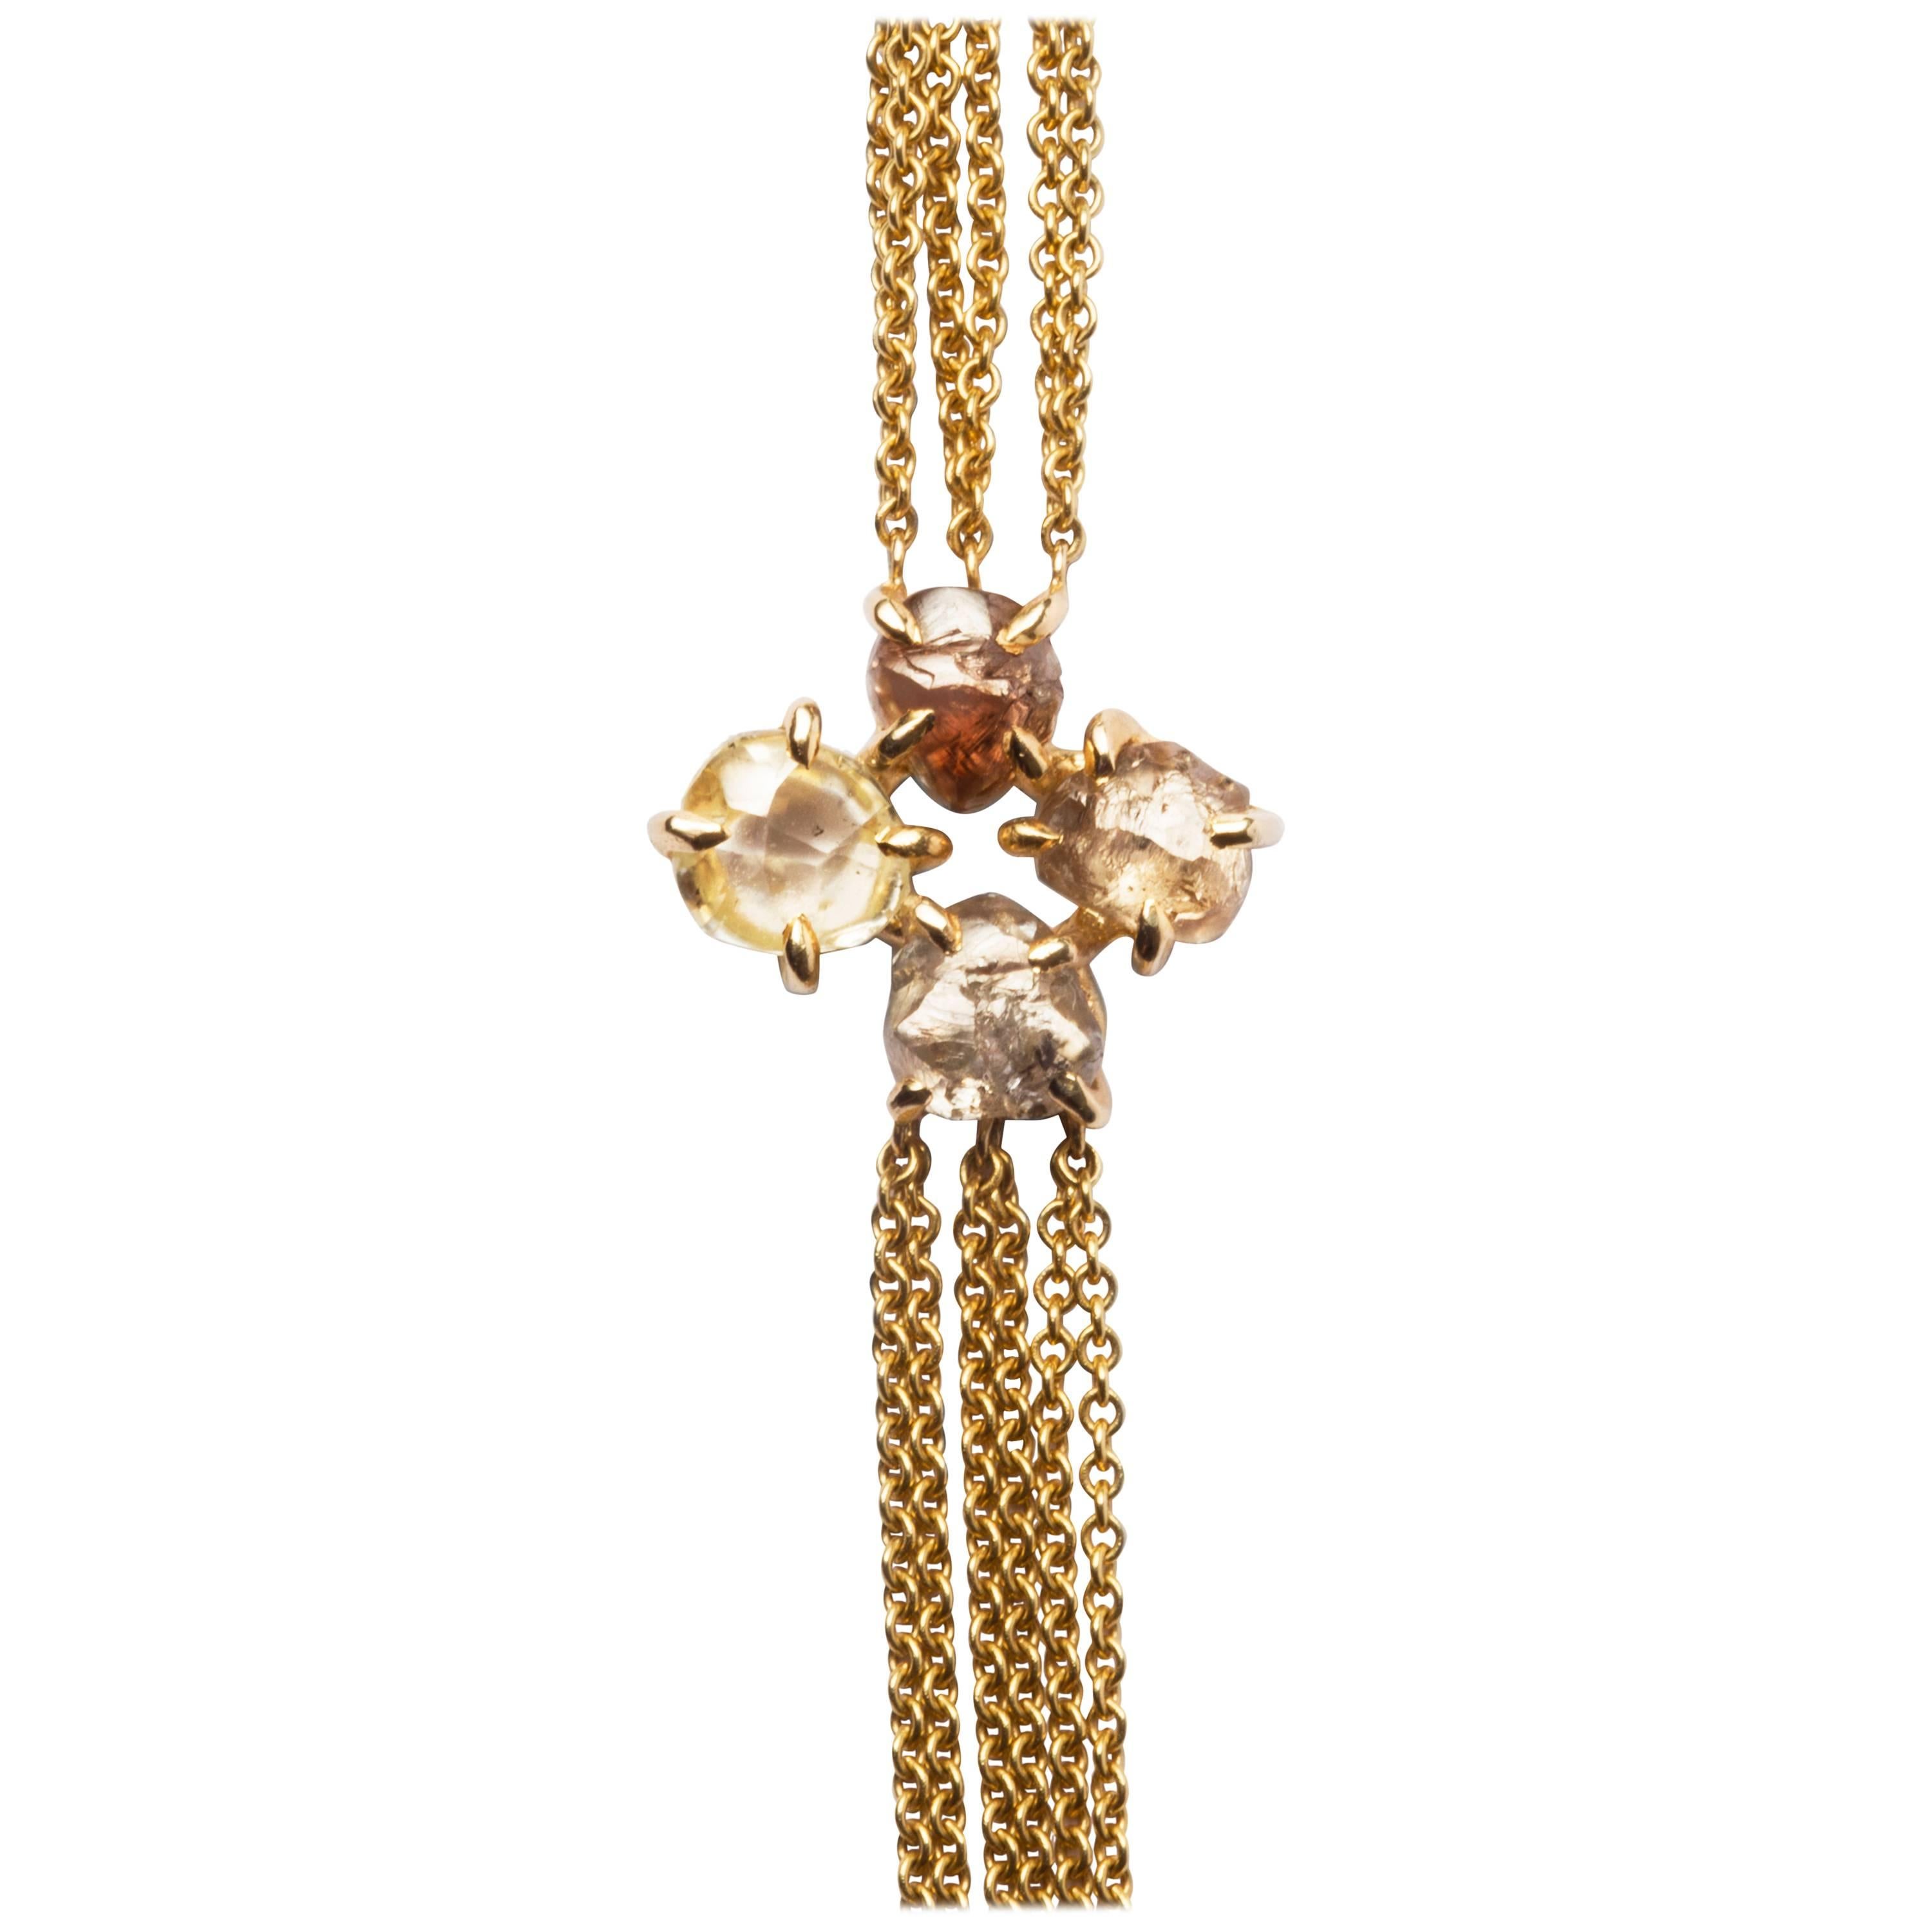 5.62 Carat Rough Diamonds Chain Bracelet For Sale